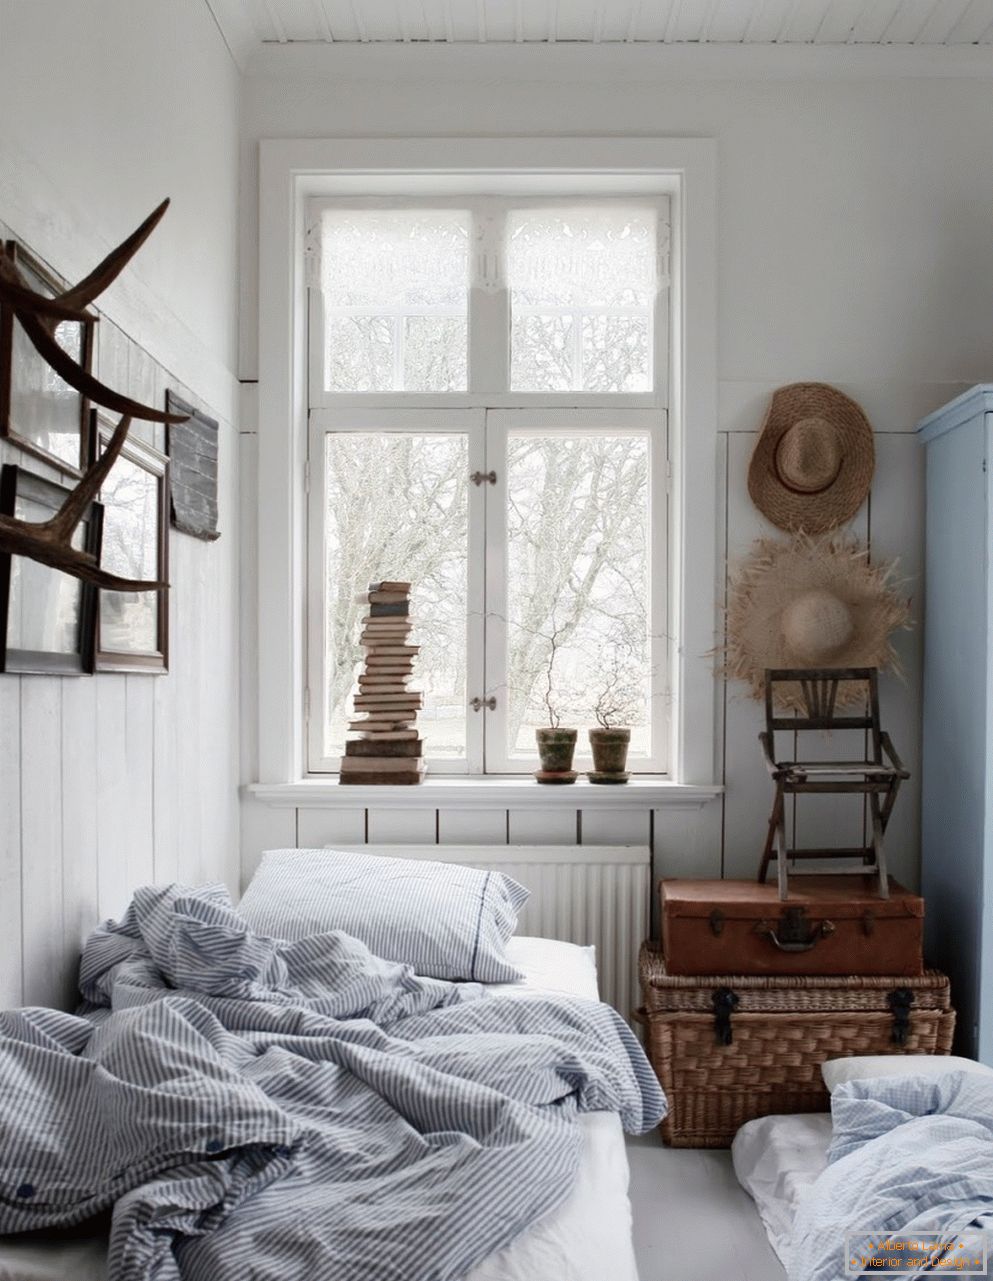 Skandinavischer Stil im Inneren des Schlafzimmers, seine Eigenschaften und Merkmale